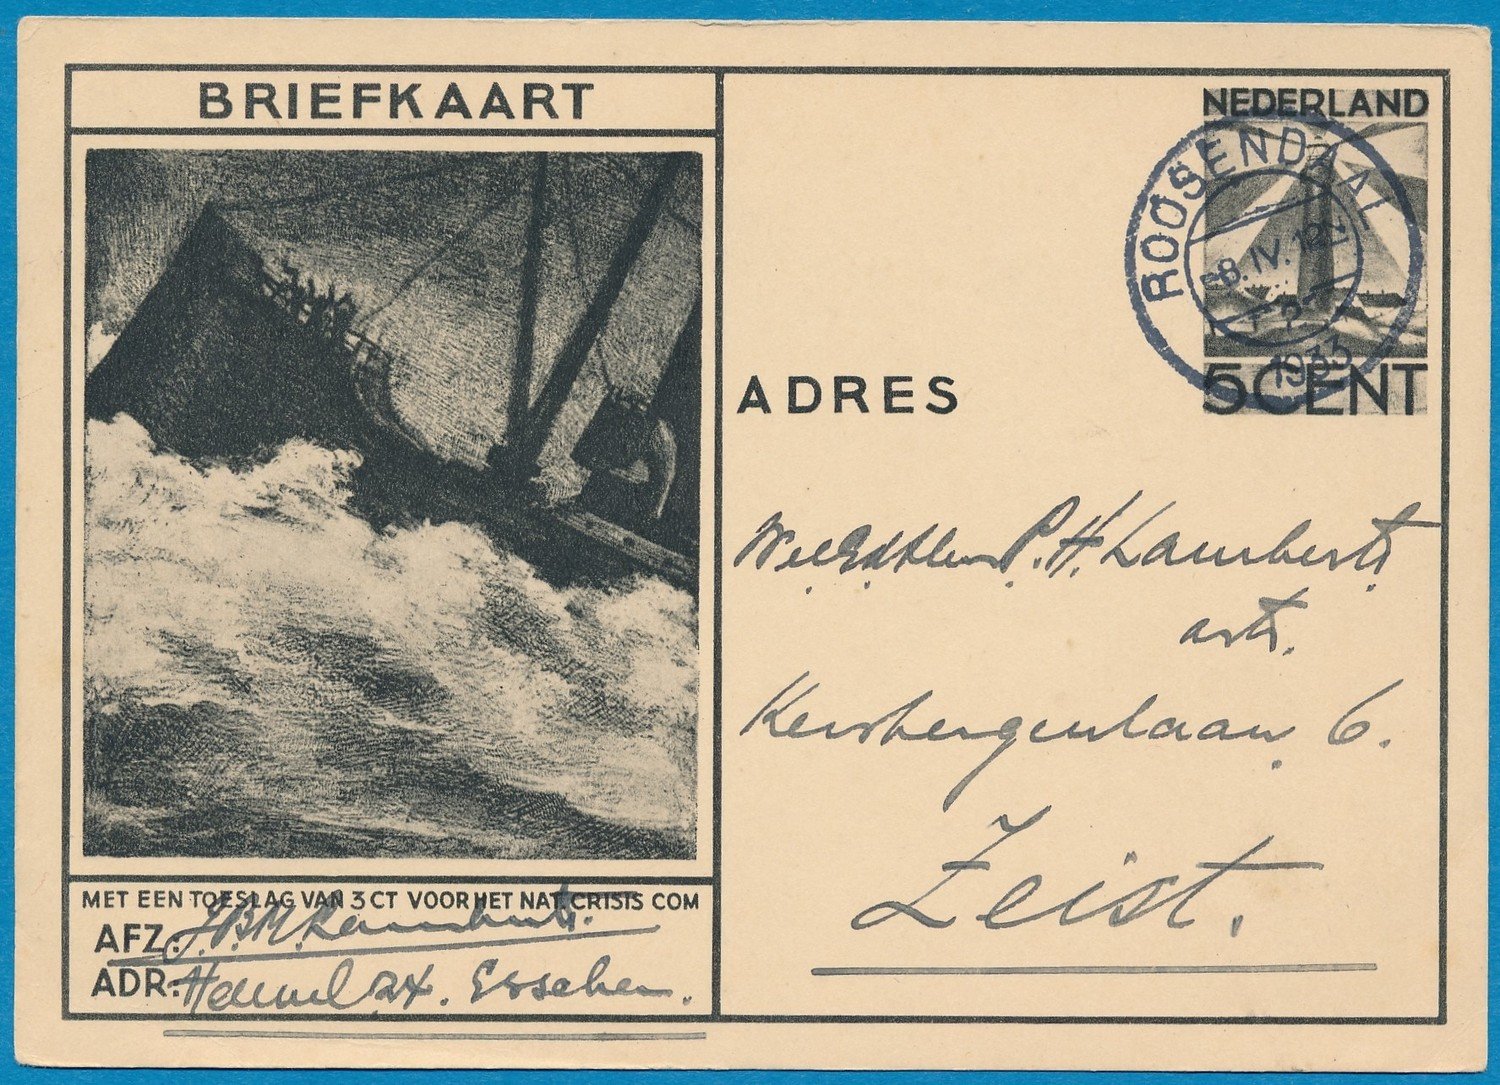 NEDERLAND briefkaart Crisis comité 1933 Roosendaal vuurtoren